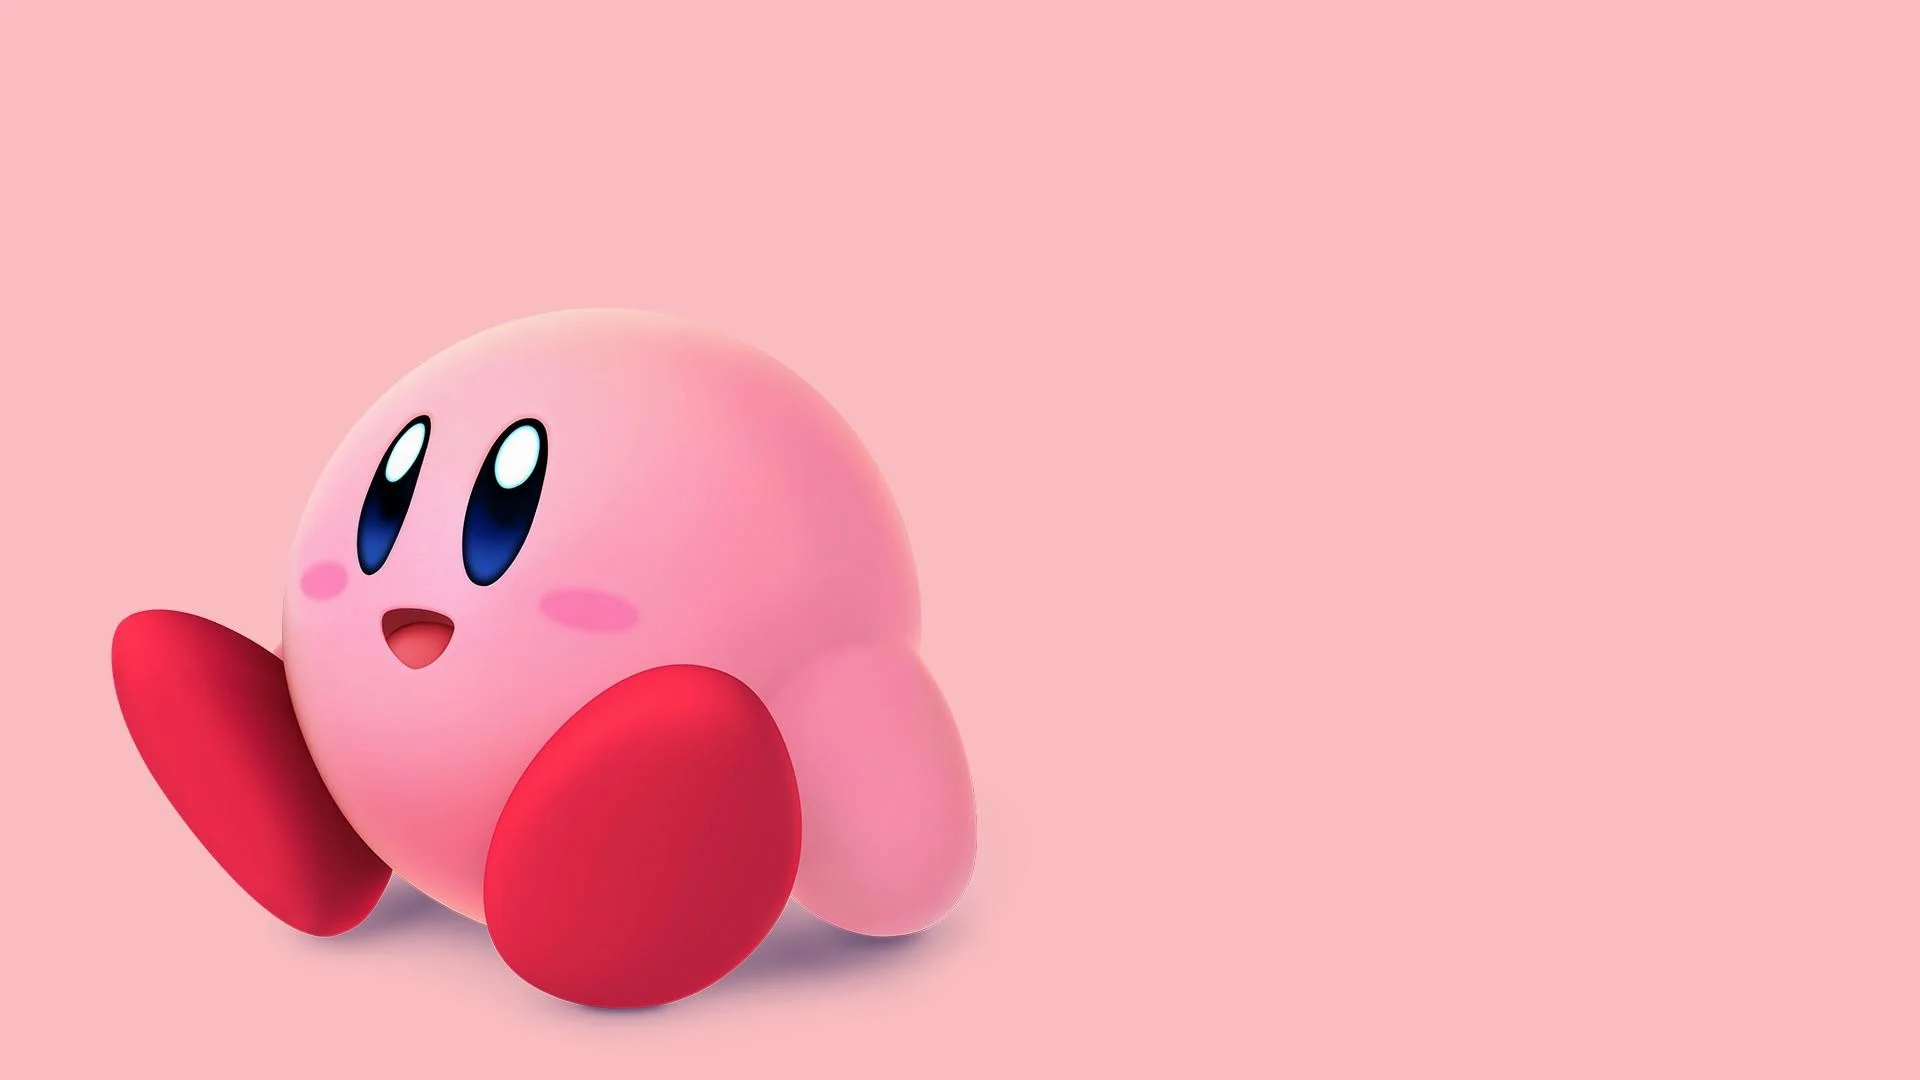 Hãy xem hình nền đáng yêu của Kirby, với hình ảnh nhân vật được thiết kế tuyệt đẹp và màu sắc tươi tắn sẽ khiến bạn cảm thấy thư giãn và vui vẻ.